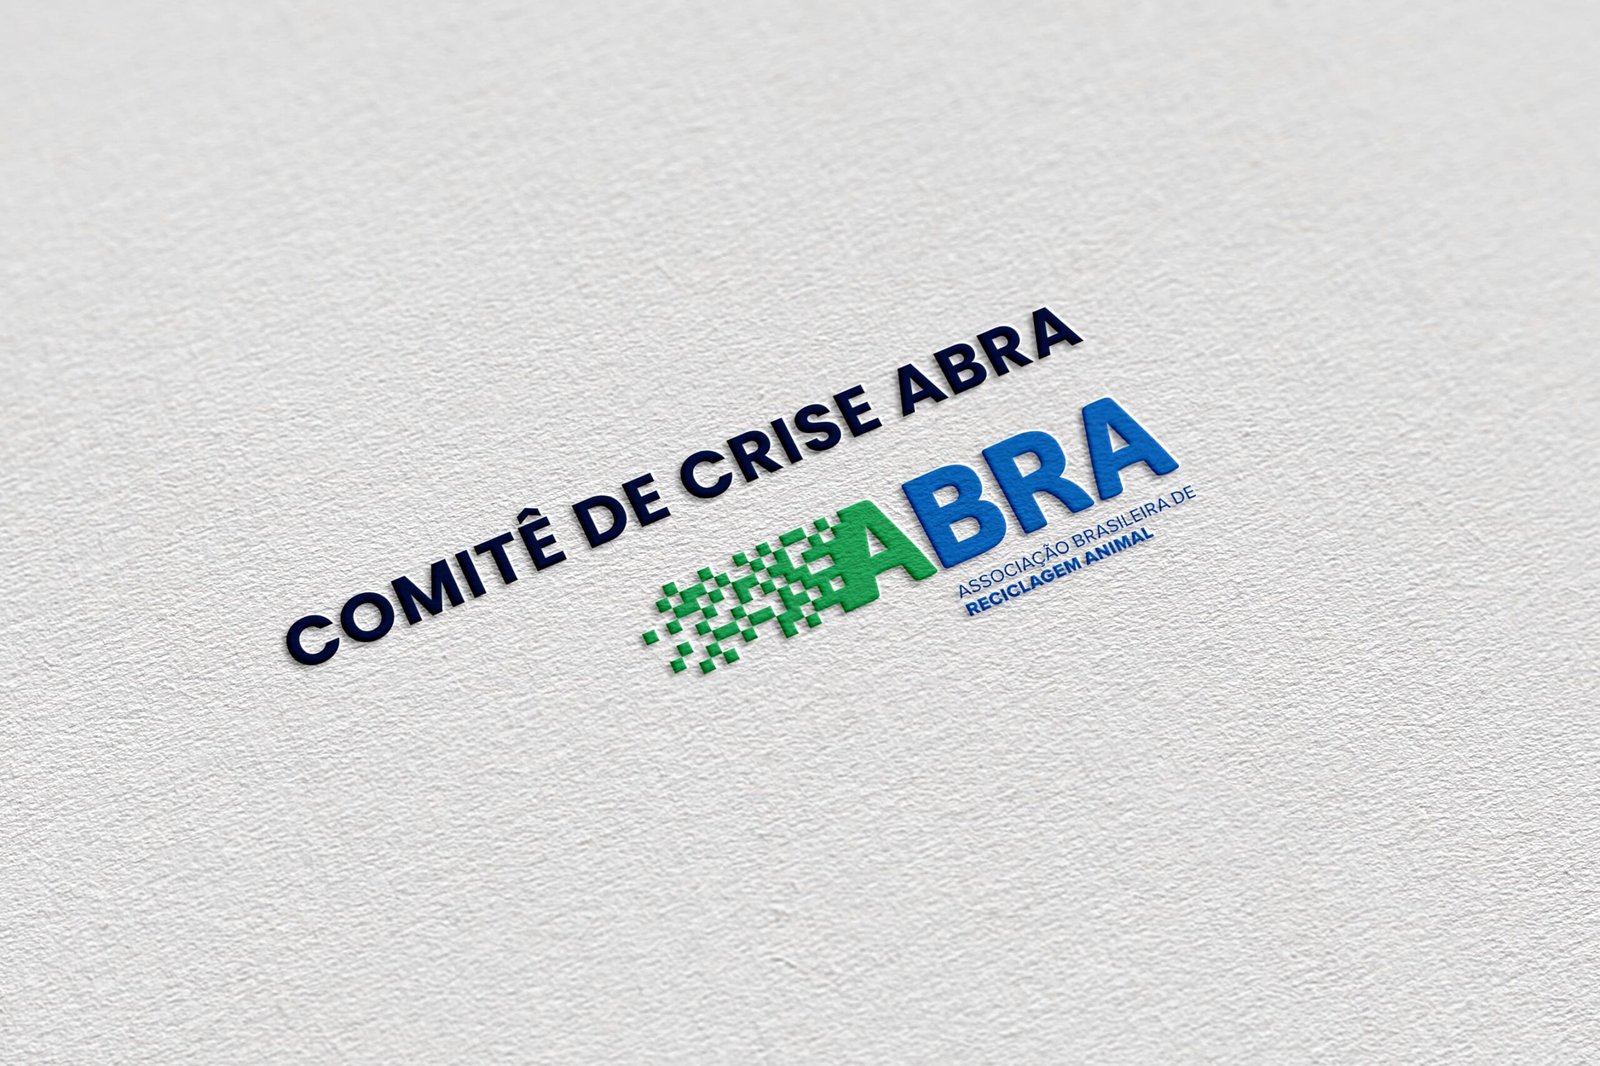 Através de Comitê de Crise, ABRA e associados colaboram para melhorar normativas aplicadas ao setor